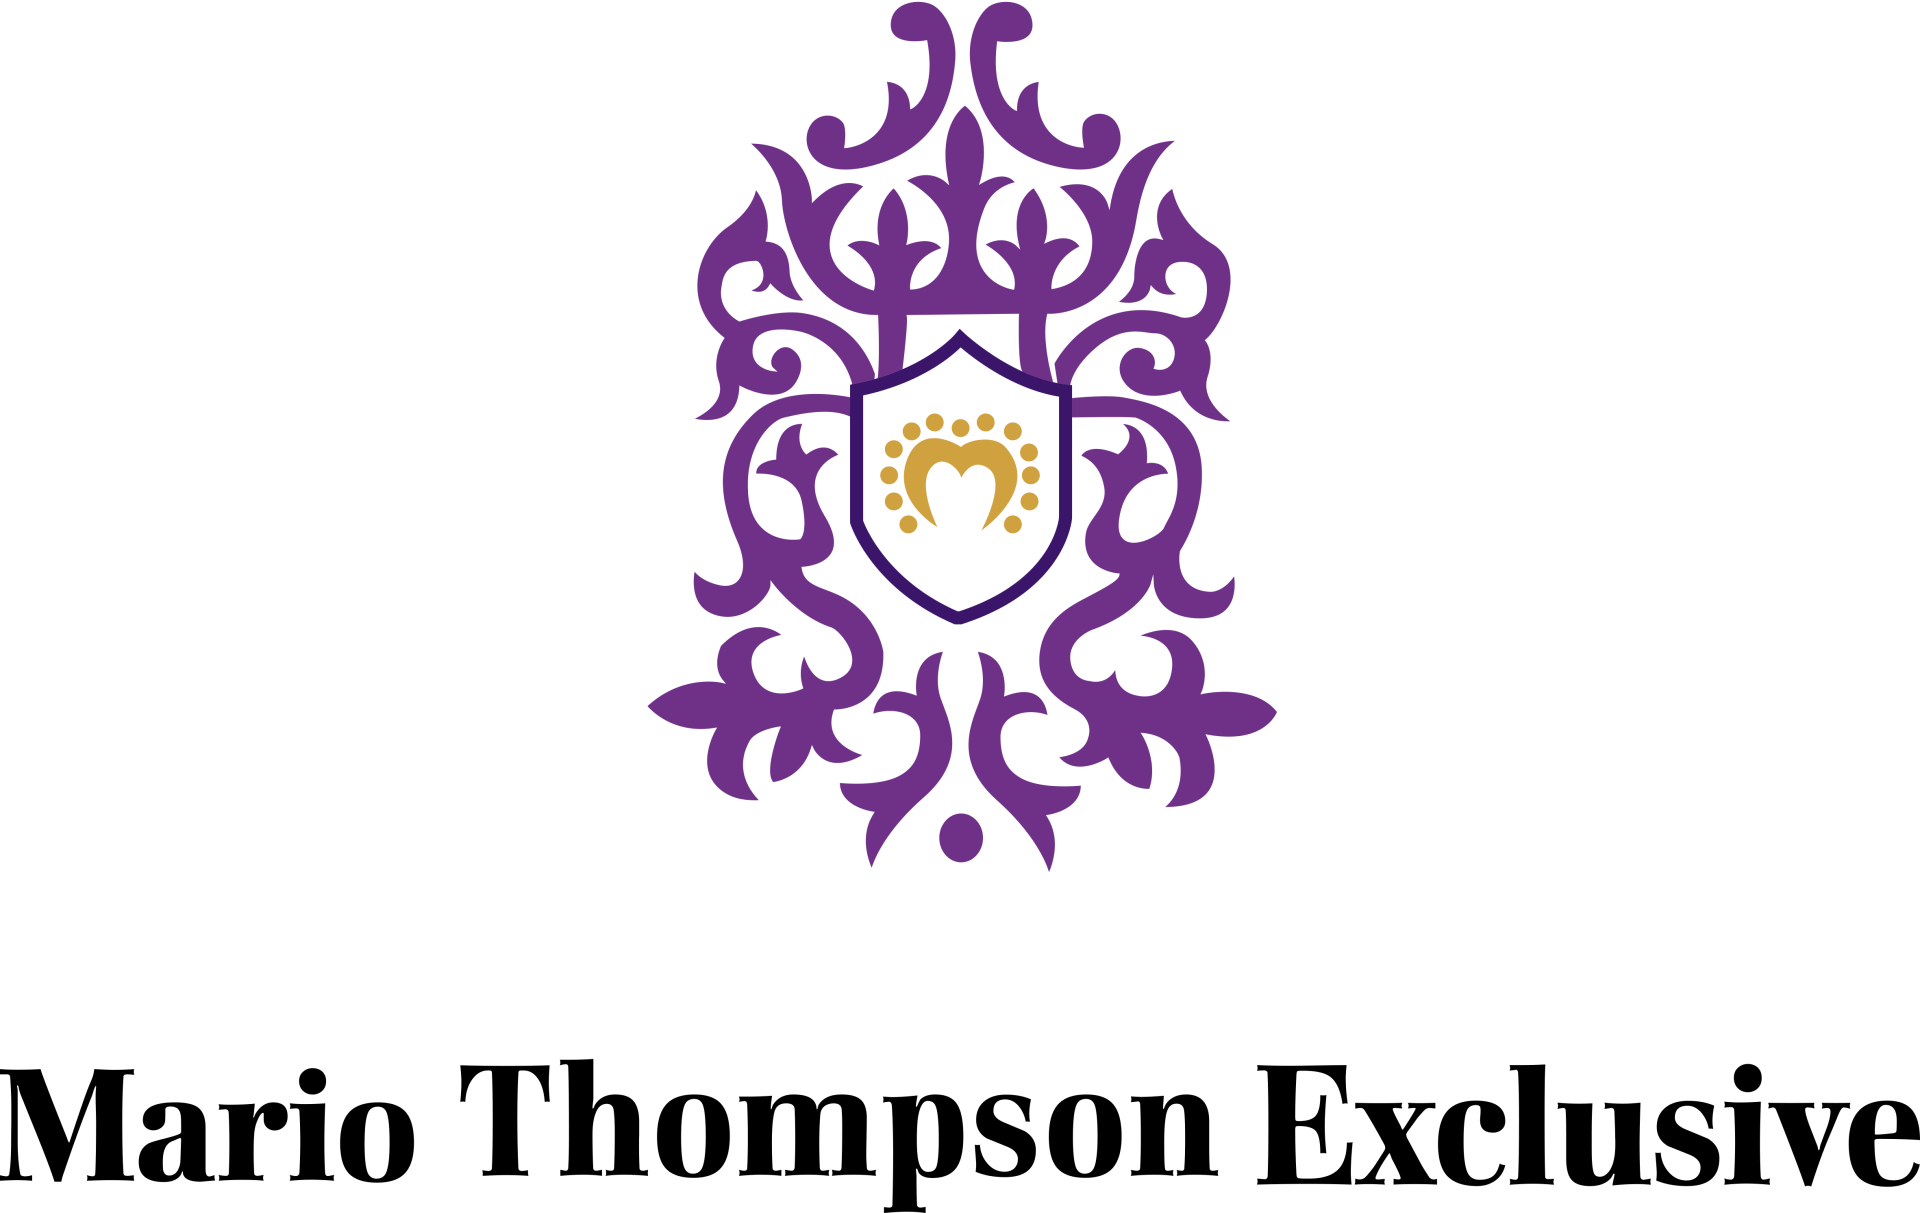 Mario Thompson Exclusive Logo